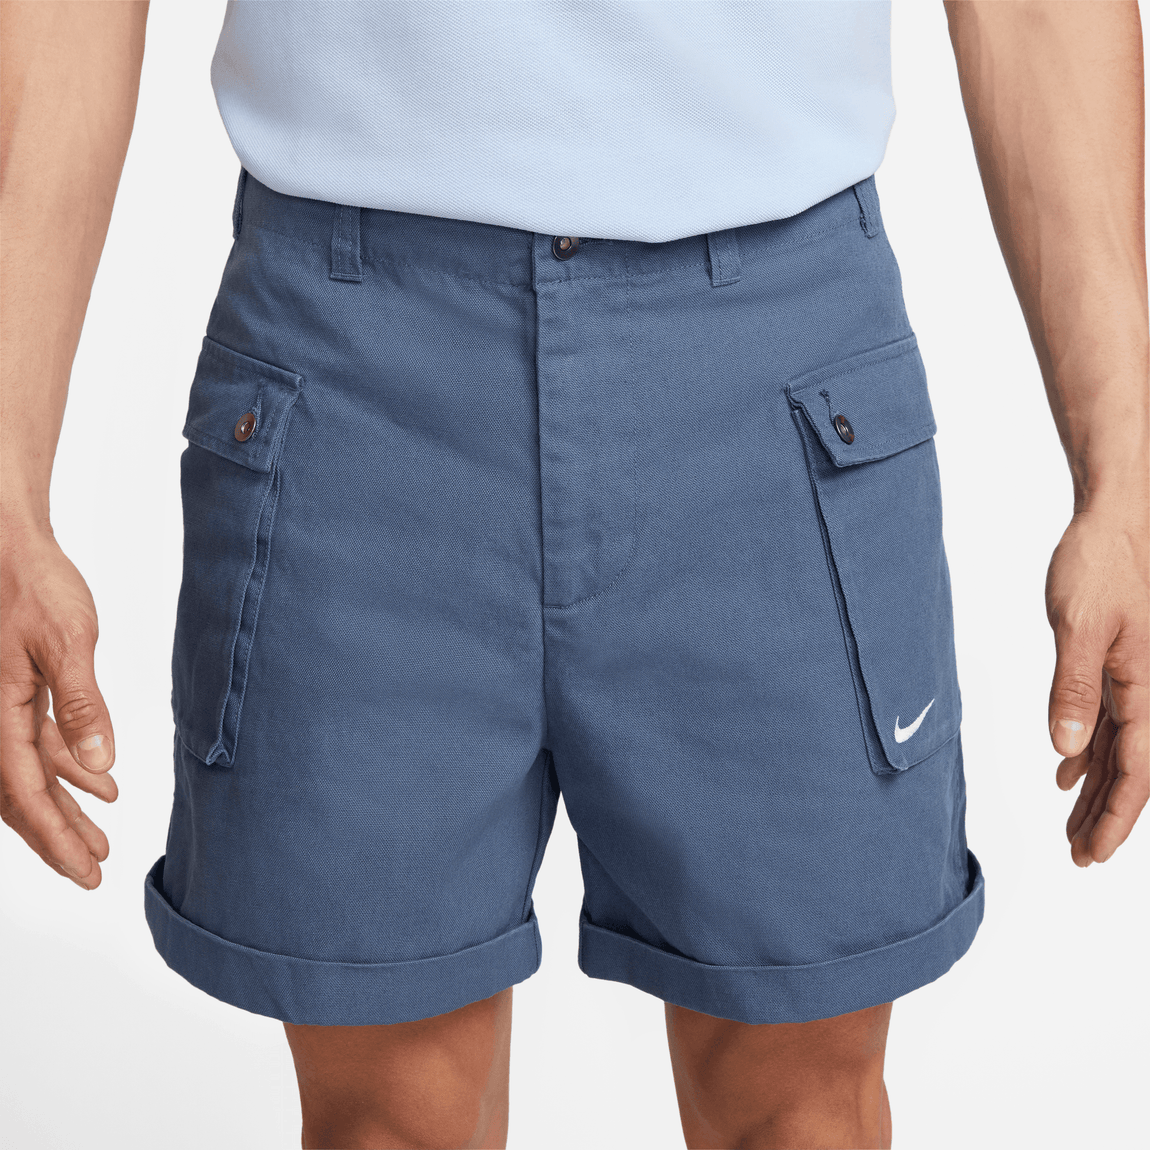 Nike Life Shorts (Diffused Blue/White) - Nike Life Shorts (Diffused Blue/White) - 